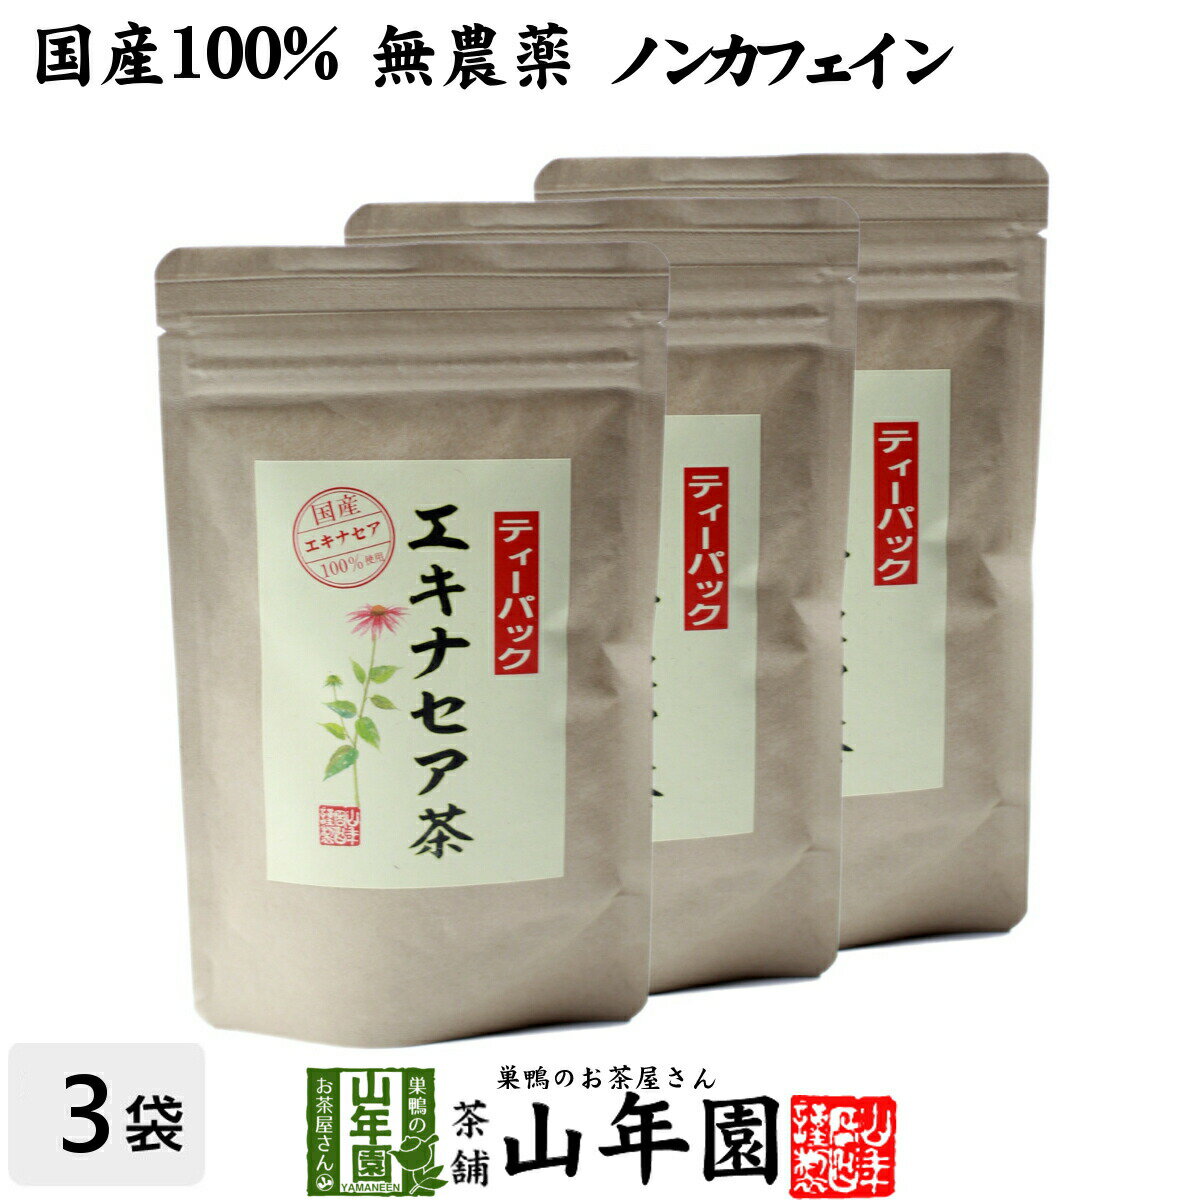 【国産 100%】エキナセア茶 2g×10パック×3袋セット